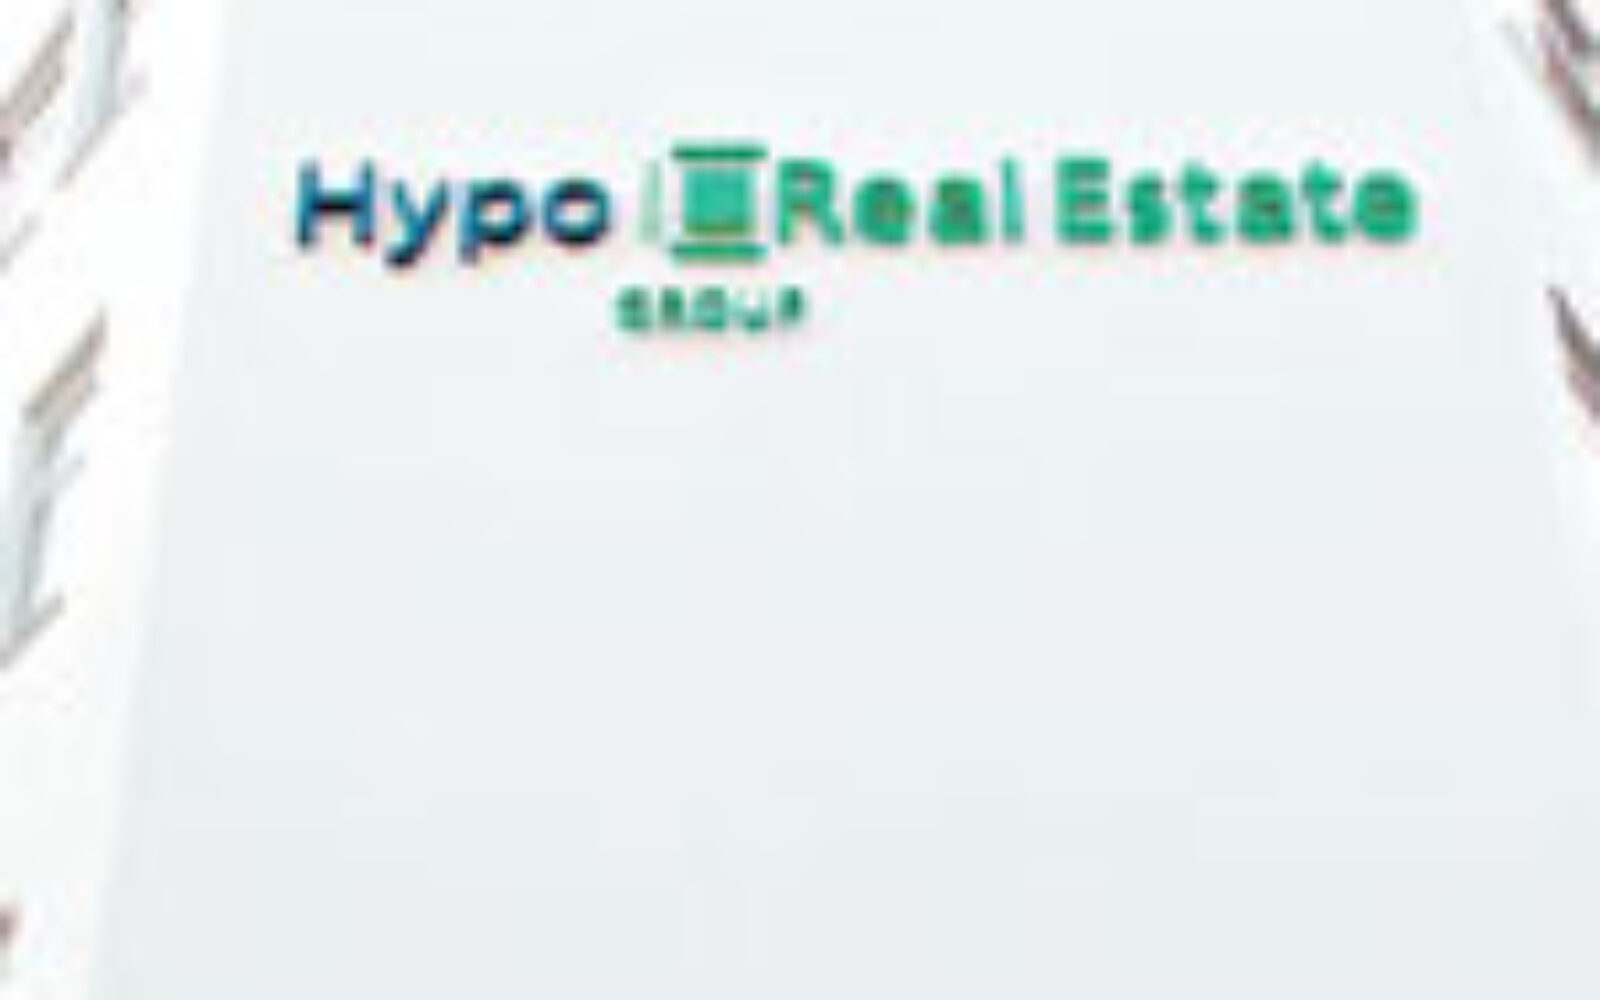 Hypo Real Estate kupuje Depfa Bank za 5,7 milijardi eura ...